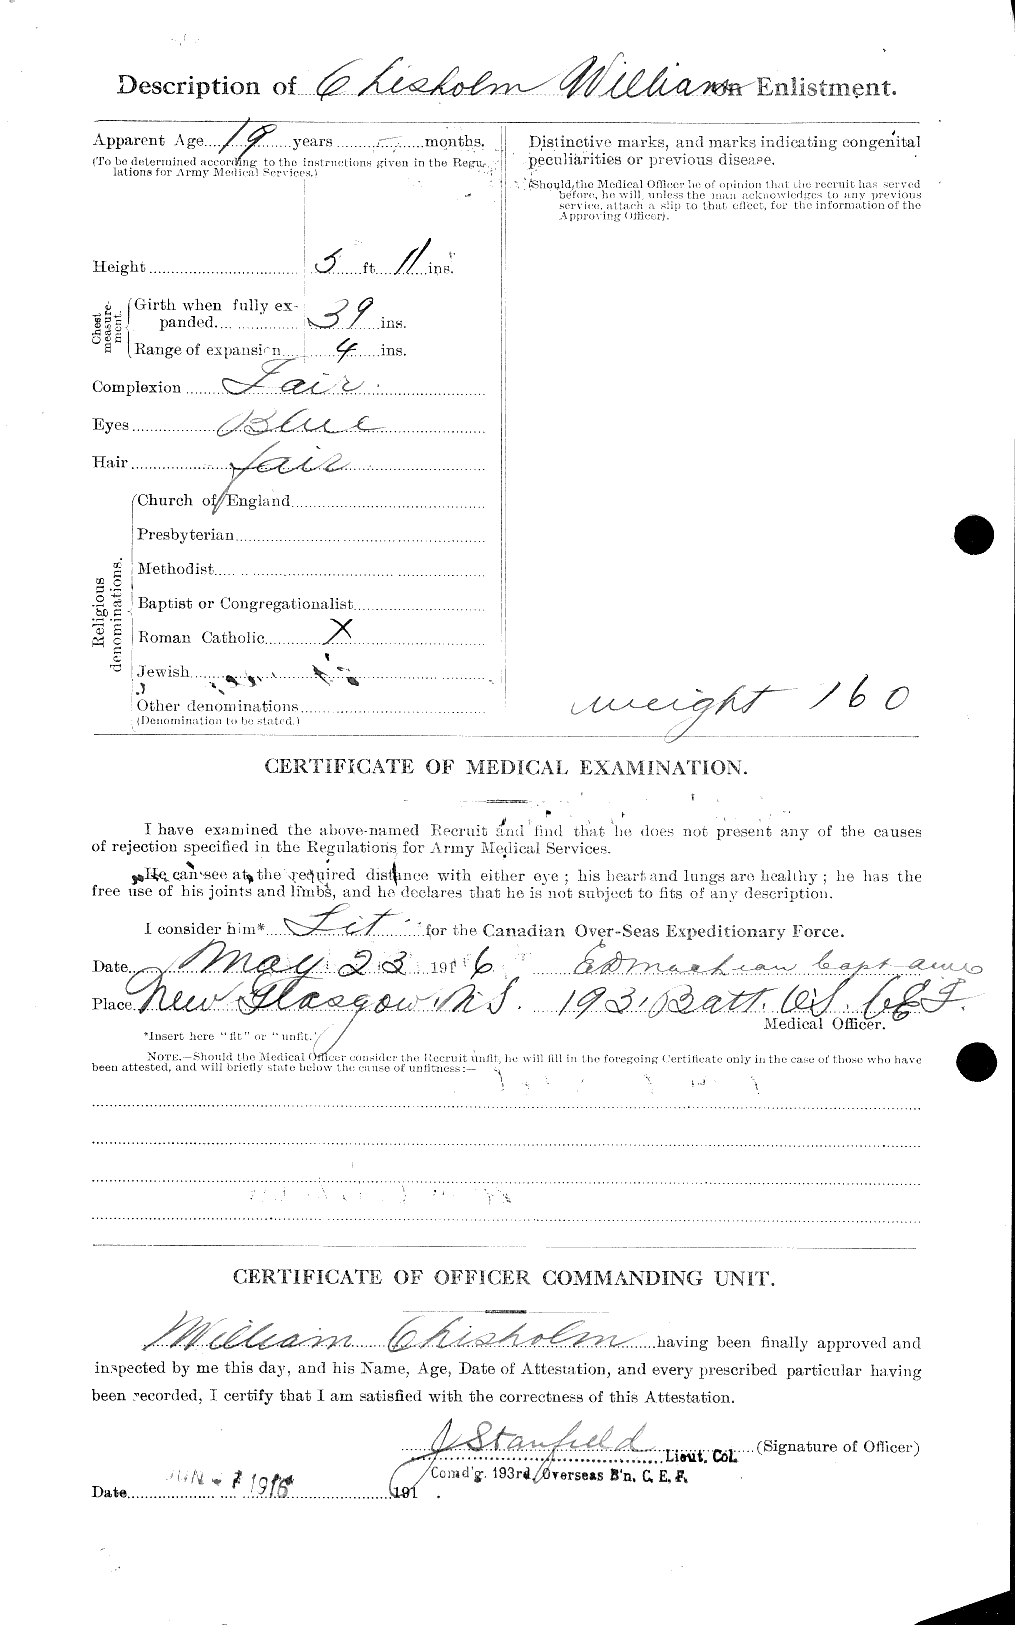 Dossiers du Personnel de la Première Guerre mondiale - CEC 020355b